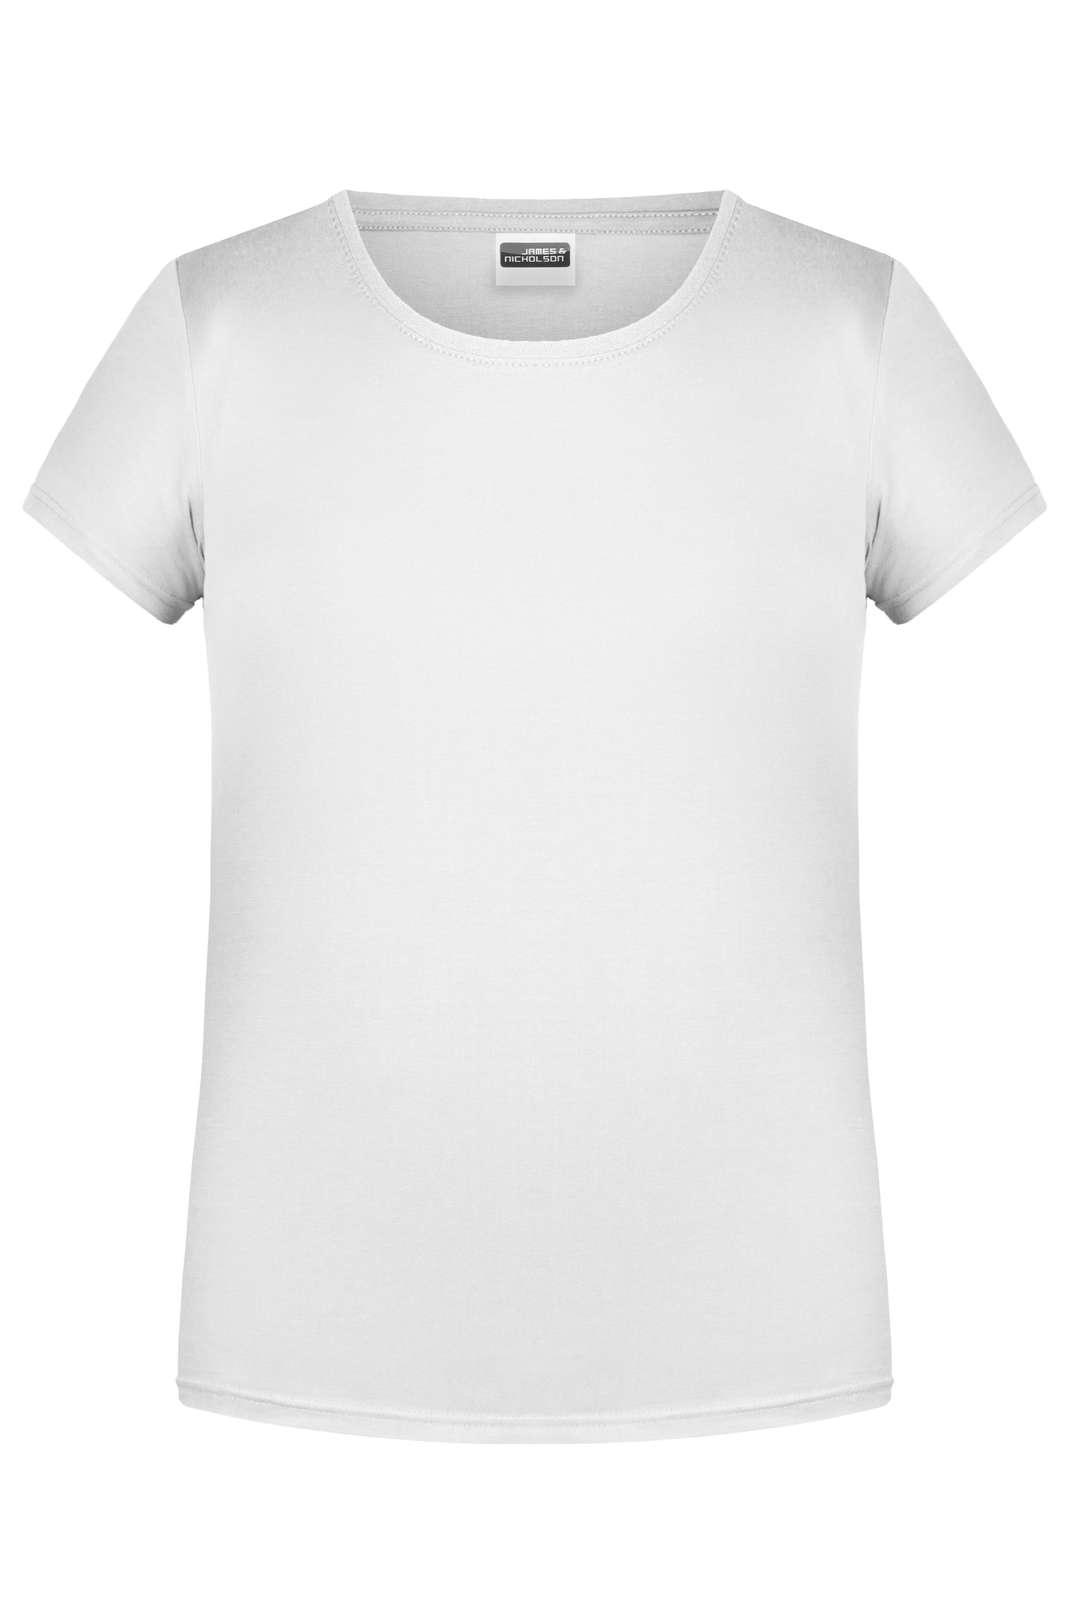 J&N GIRL'S BASIC-T - T-Shirt - JA Profil 